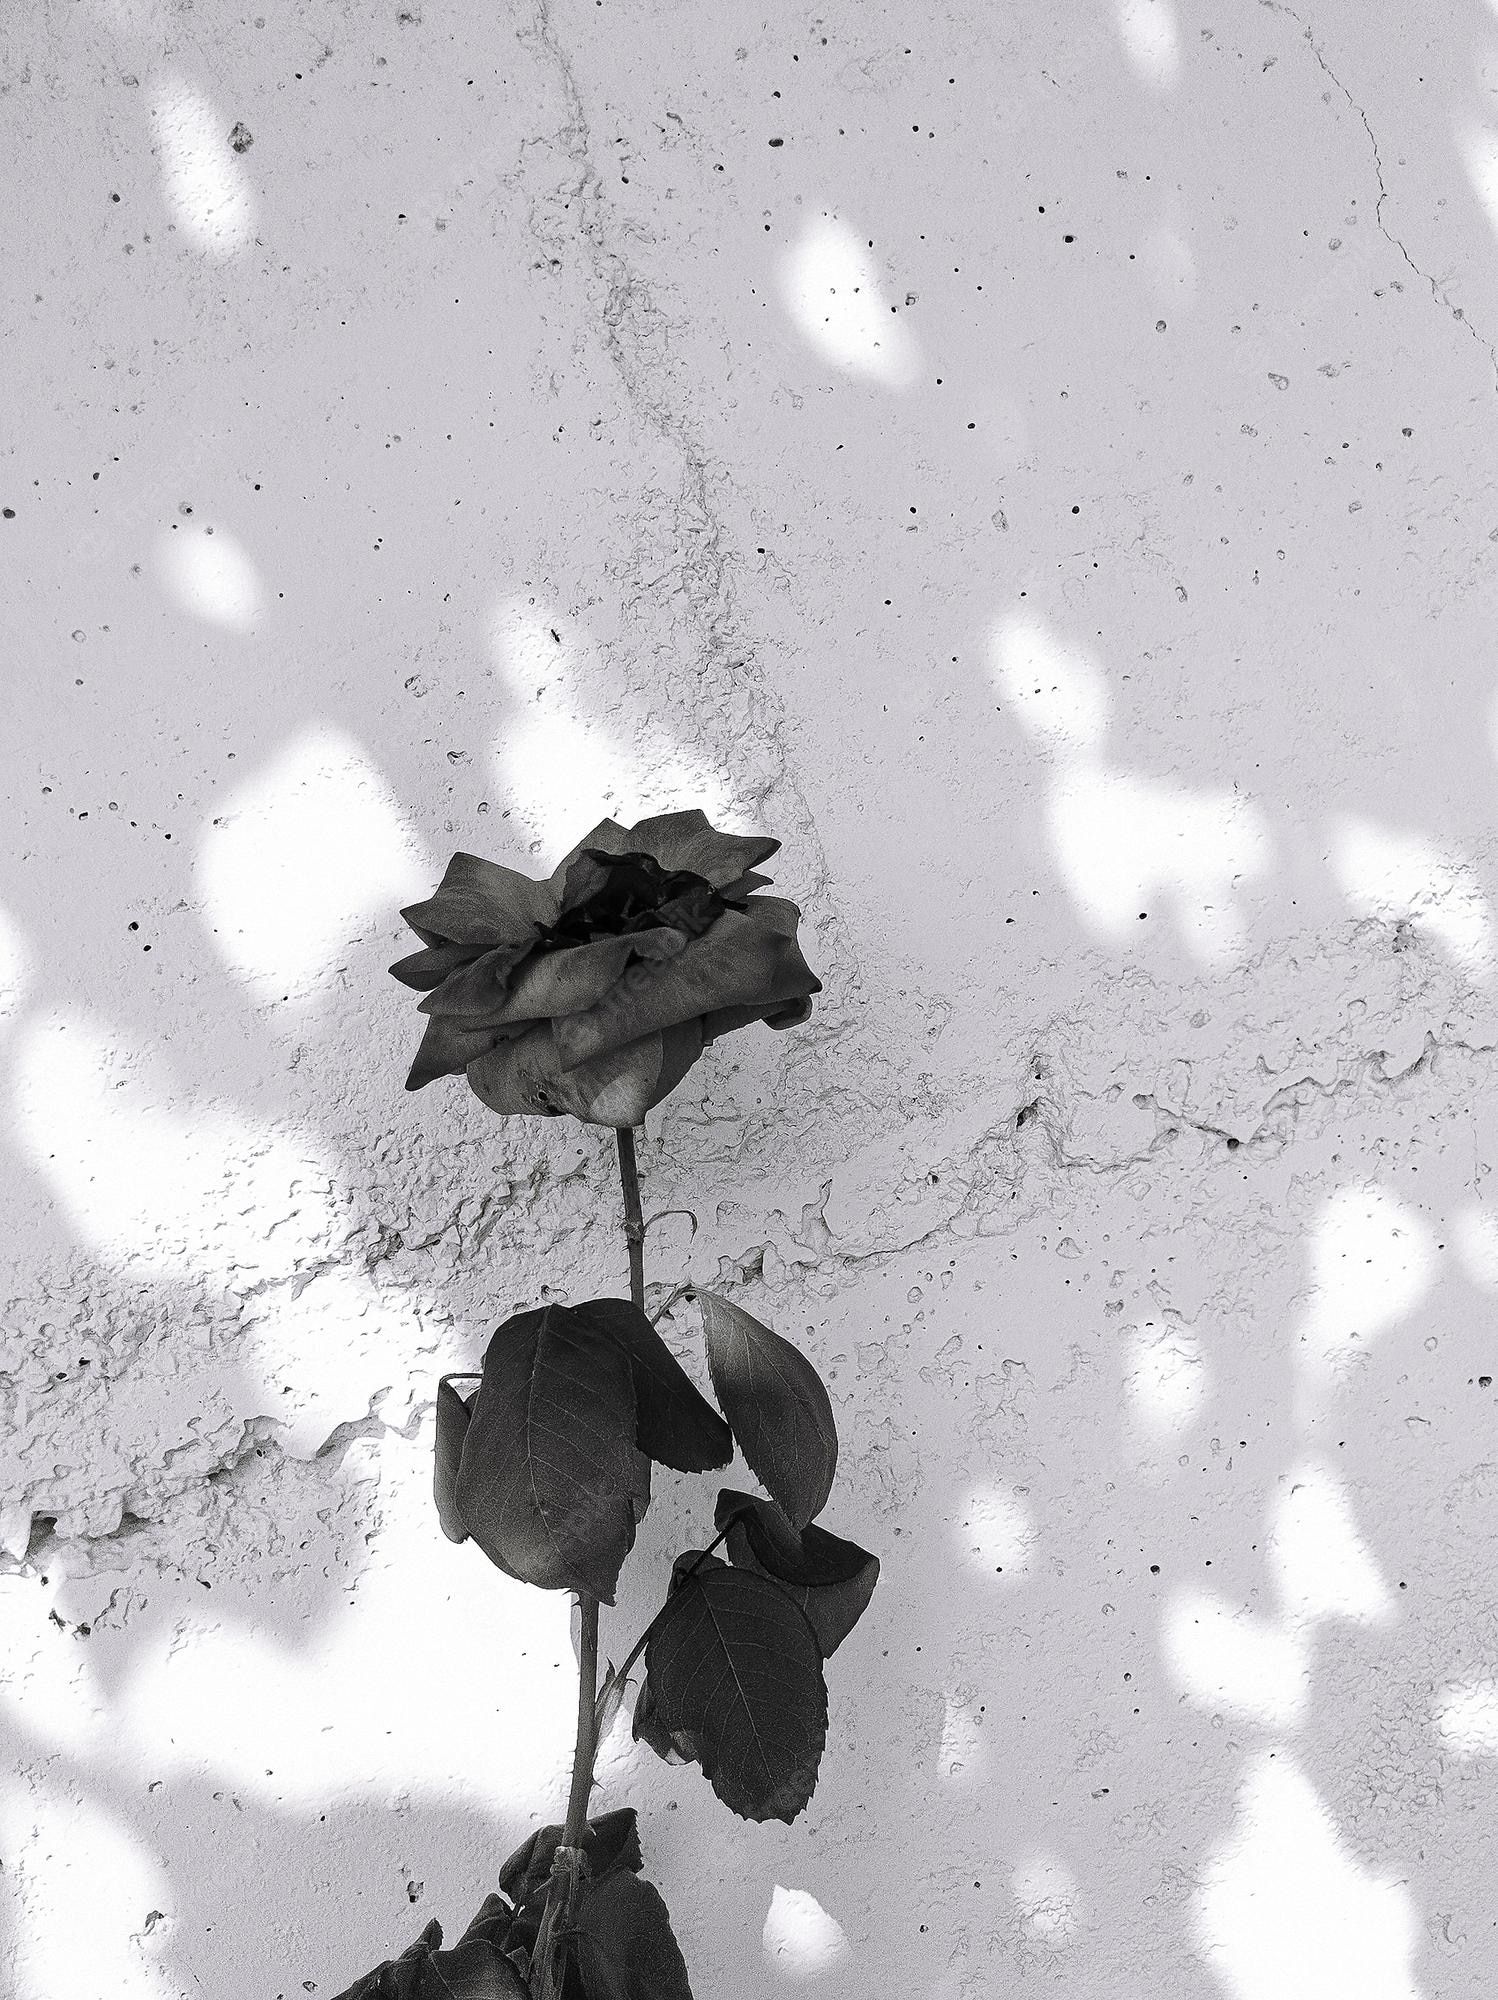  Grau Hintergrundbild 1498x2000. Stilvolle naturtapete rosen und sonnenschatten minimalistische ästhetik